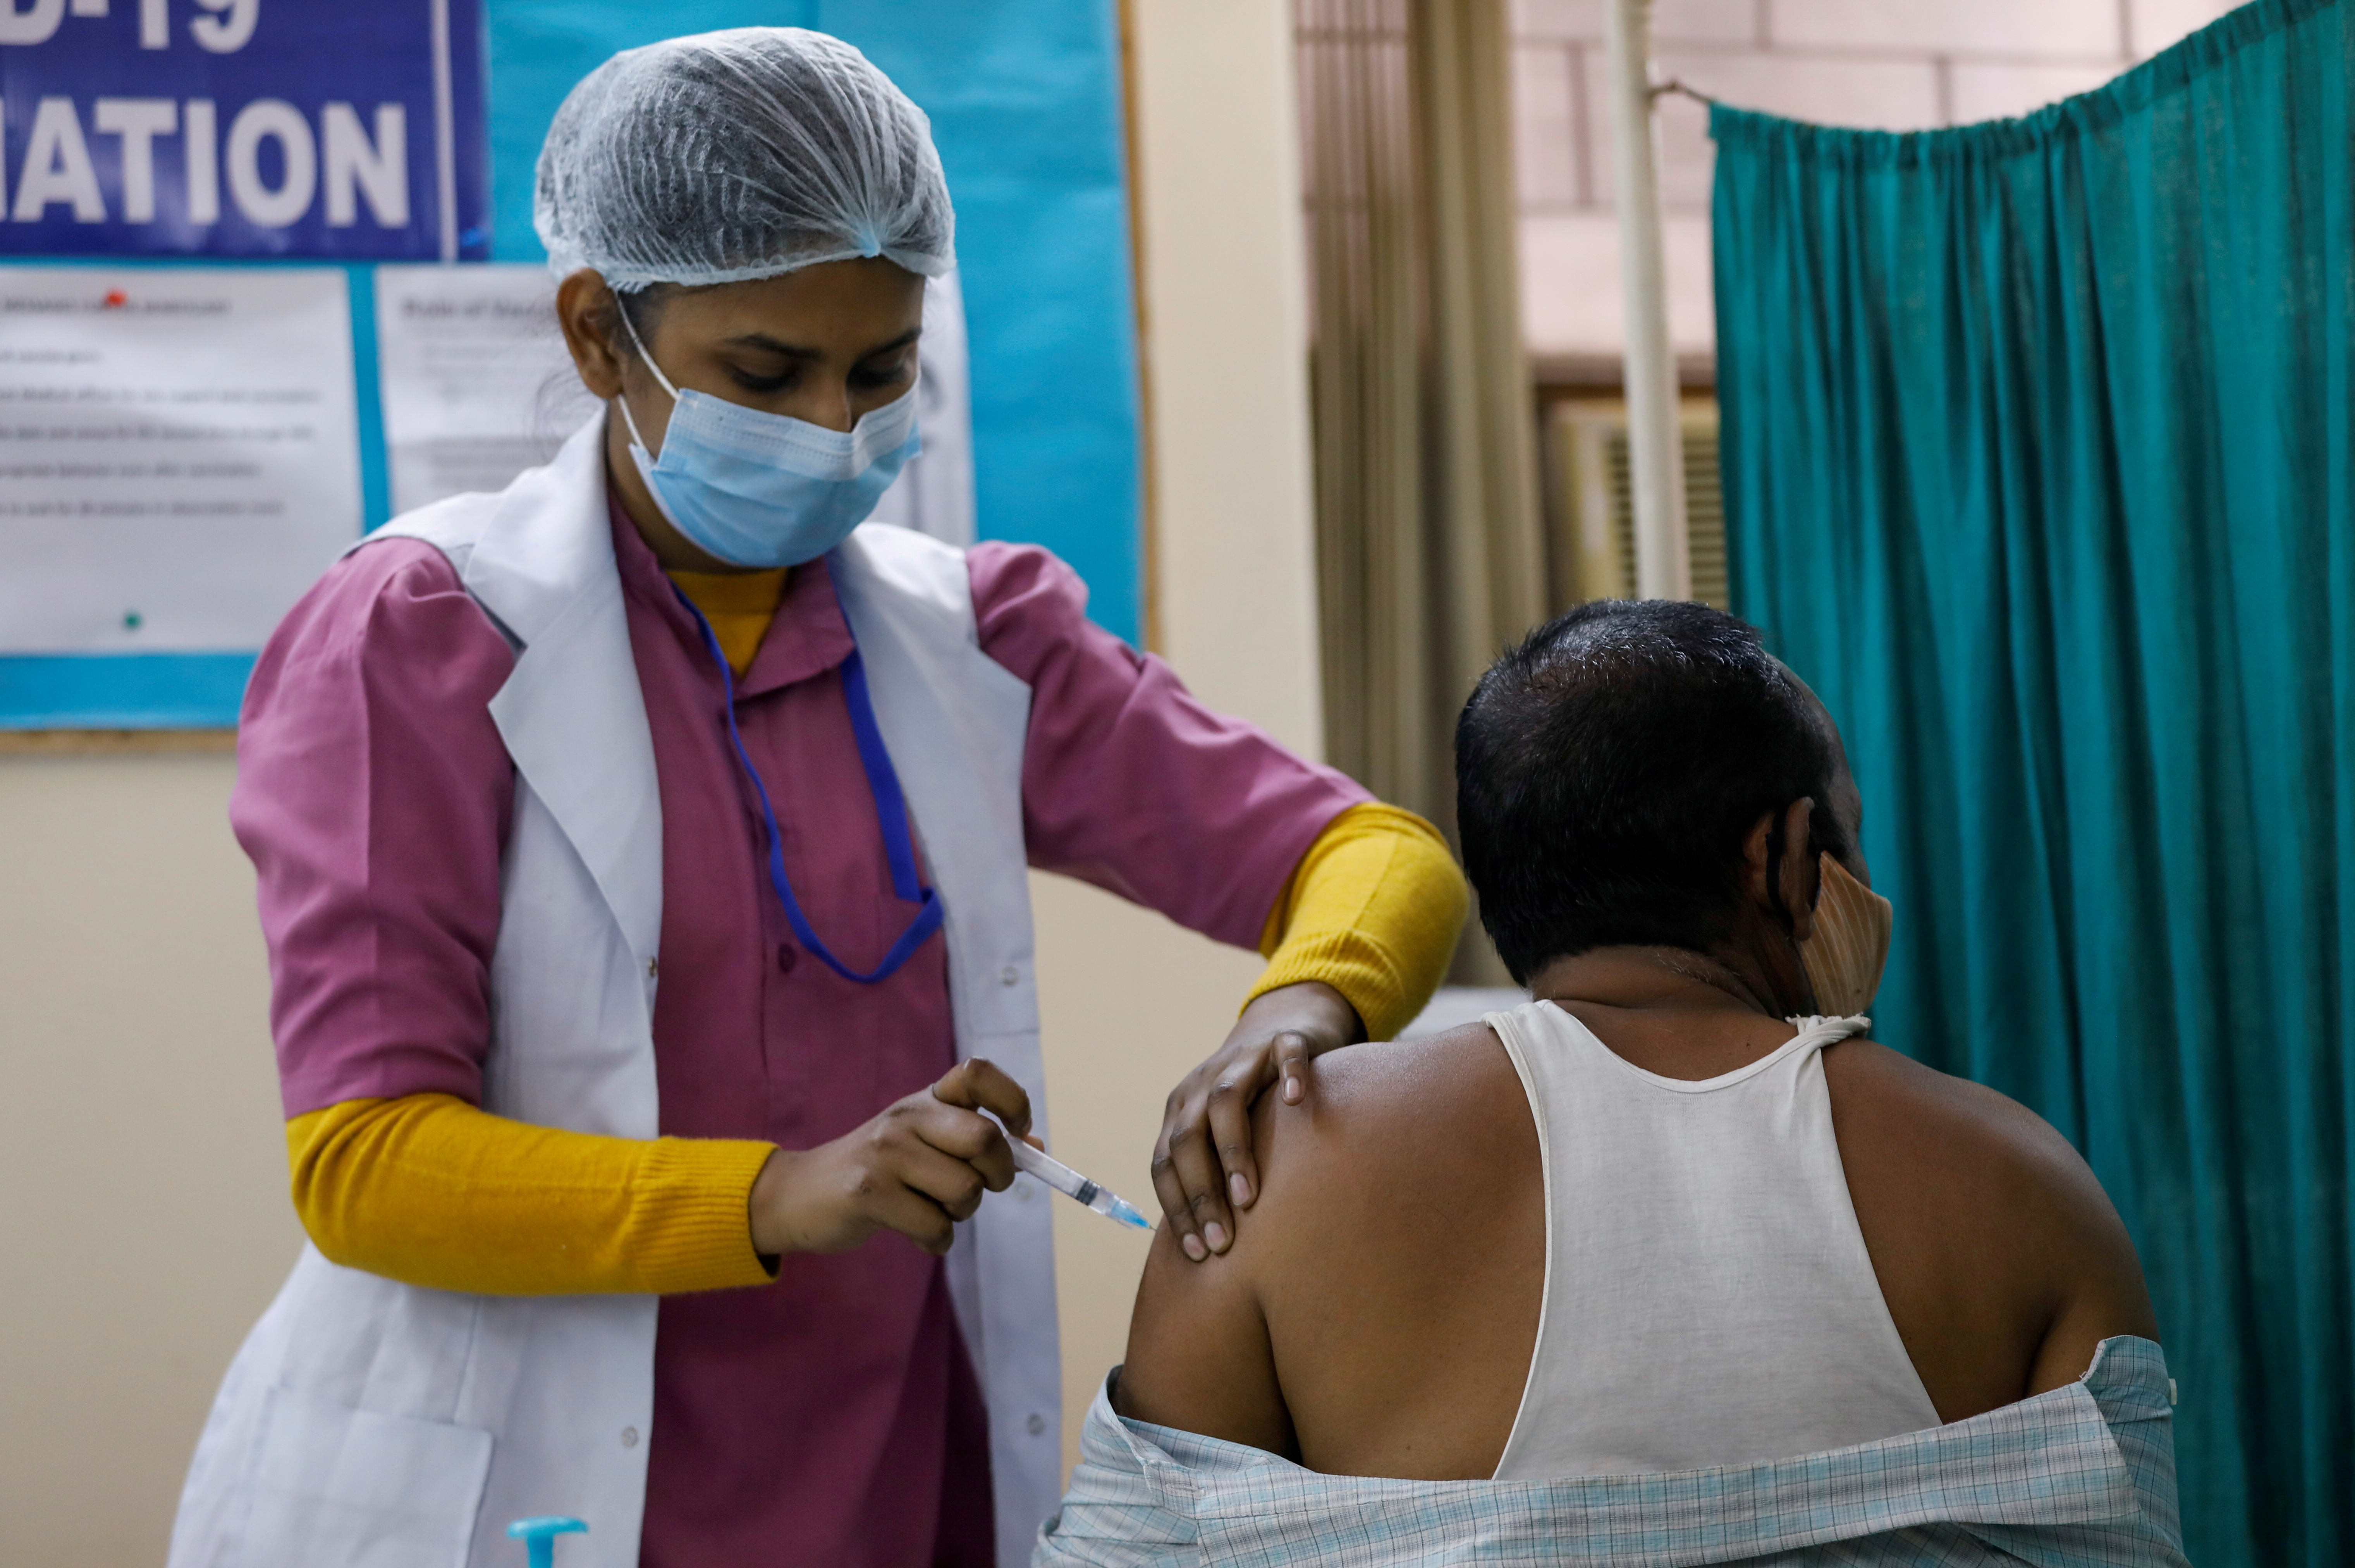 Covaxin había sido aprobada por la agencia reguladora de medicamentos de India en enero tras constatar un 81% de eficacia en los estudios clínicos (REUTERS/Adnan Abidi/File Photo)